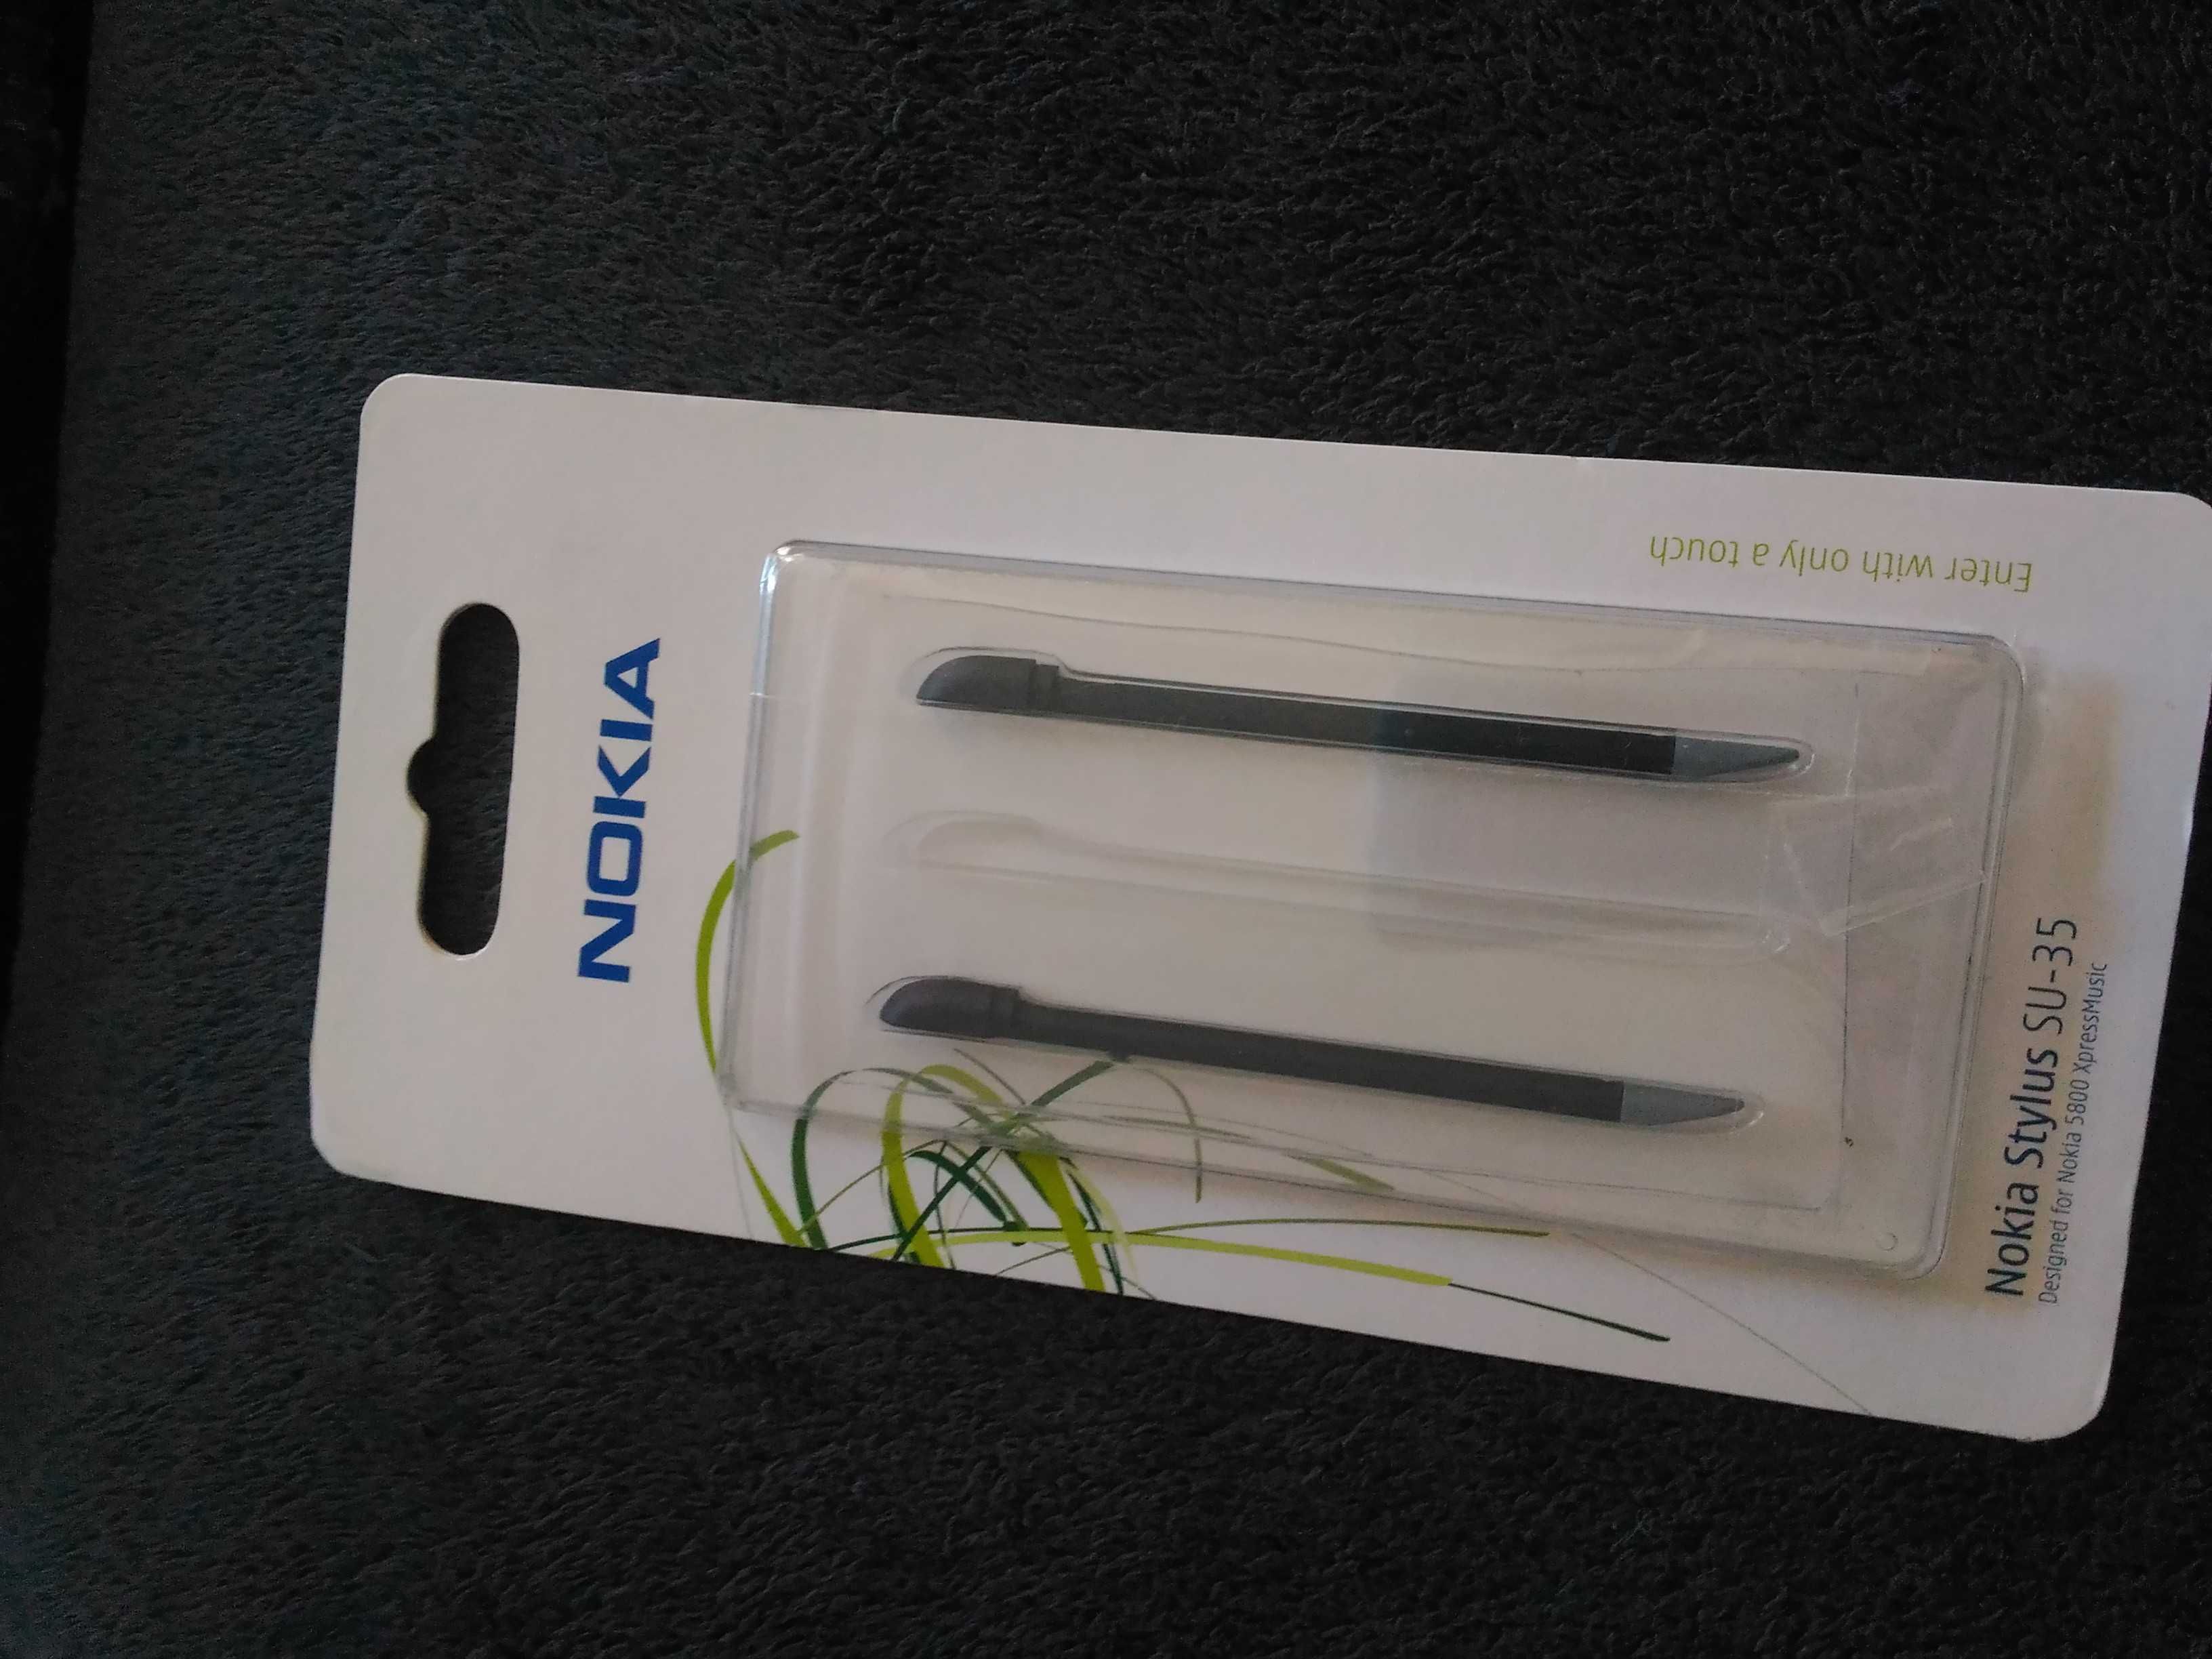 Pack telemóvel Nokia 5800 (desbloqueado) + acessórios